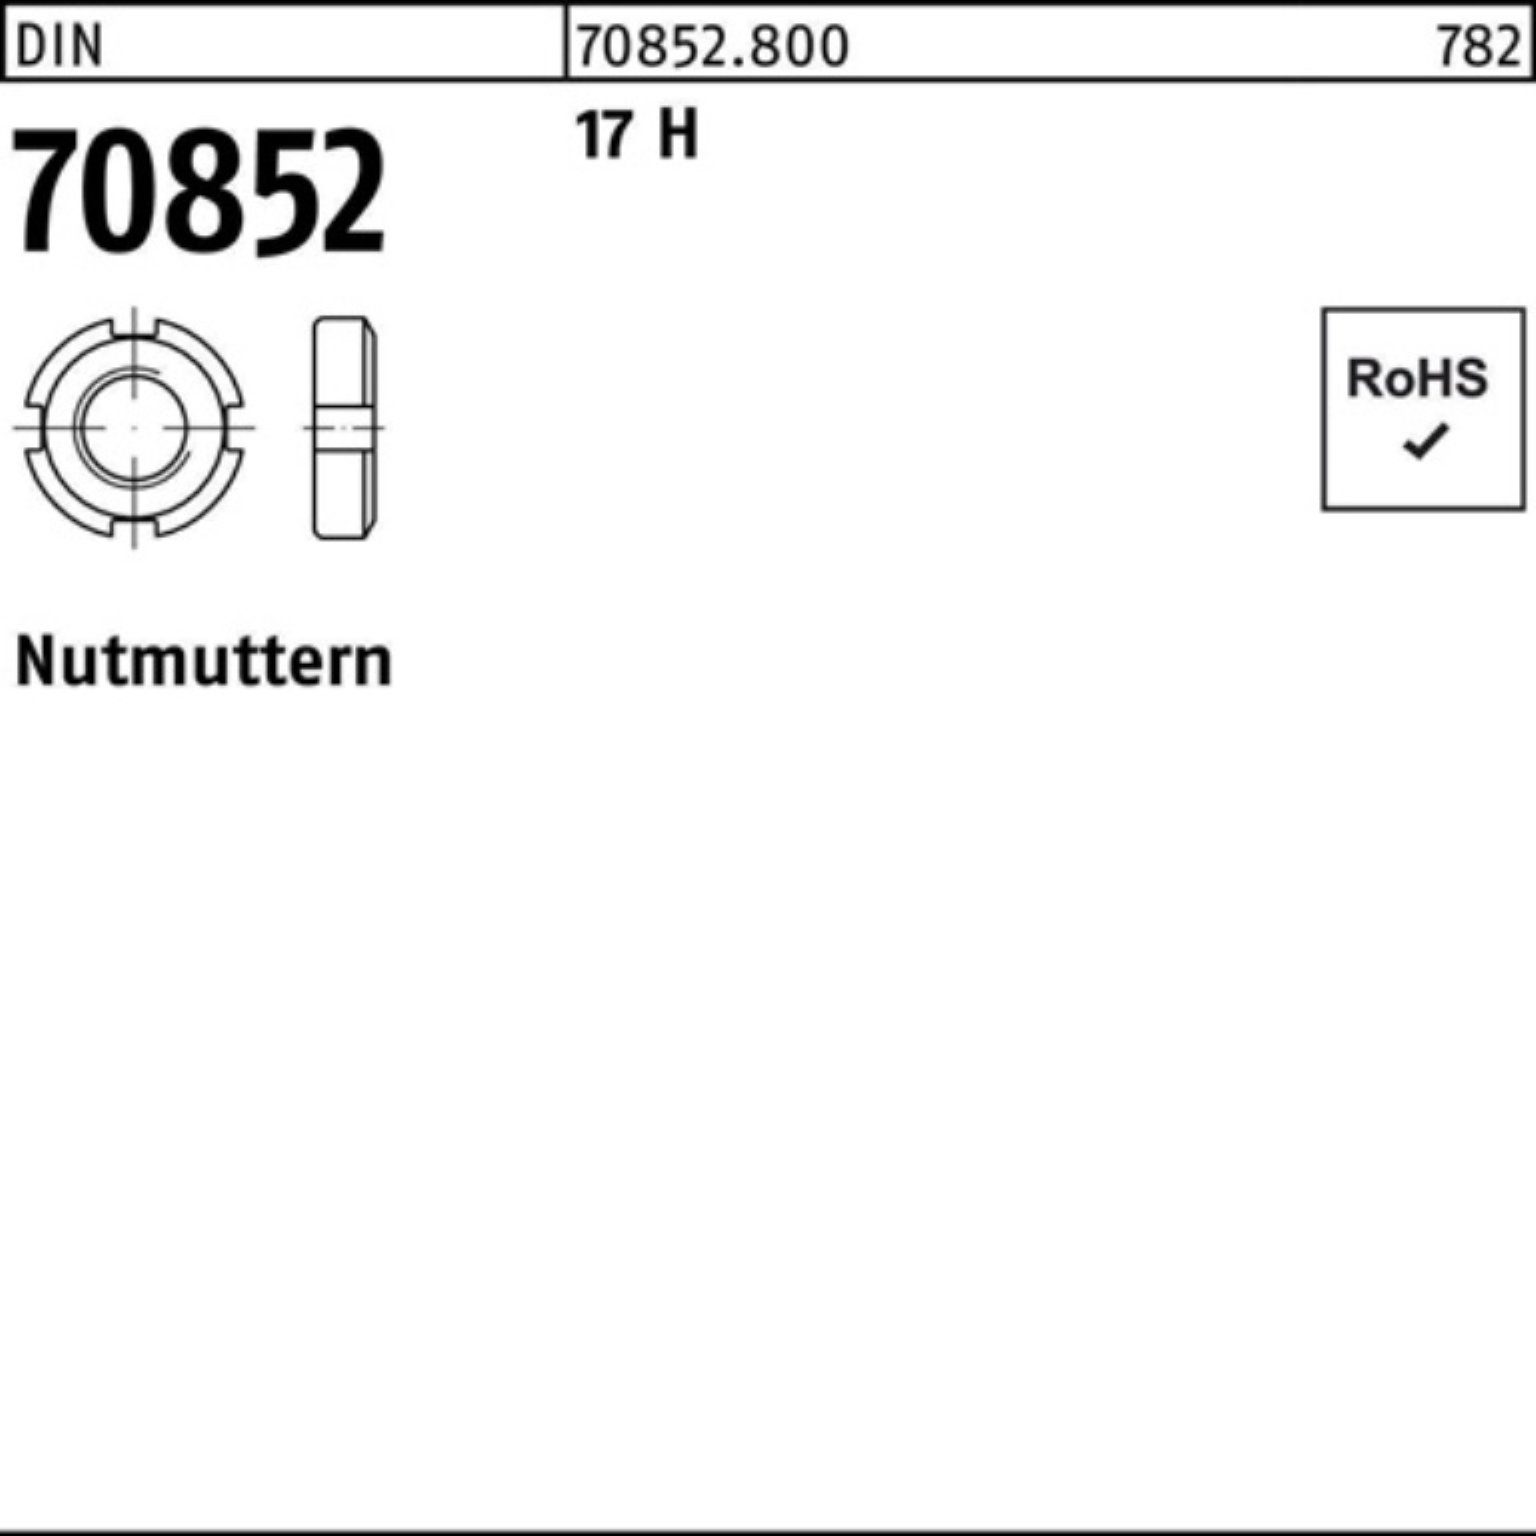 Reyher Nutmutter 100er Pack Nutmutter DIN 70852 M75x 1,5 17 H 1 Stück DIN 70852 17 H N